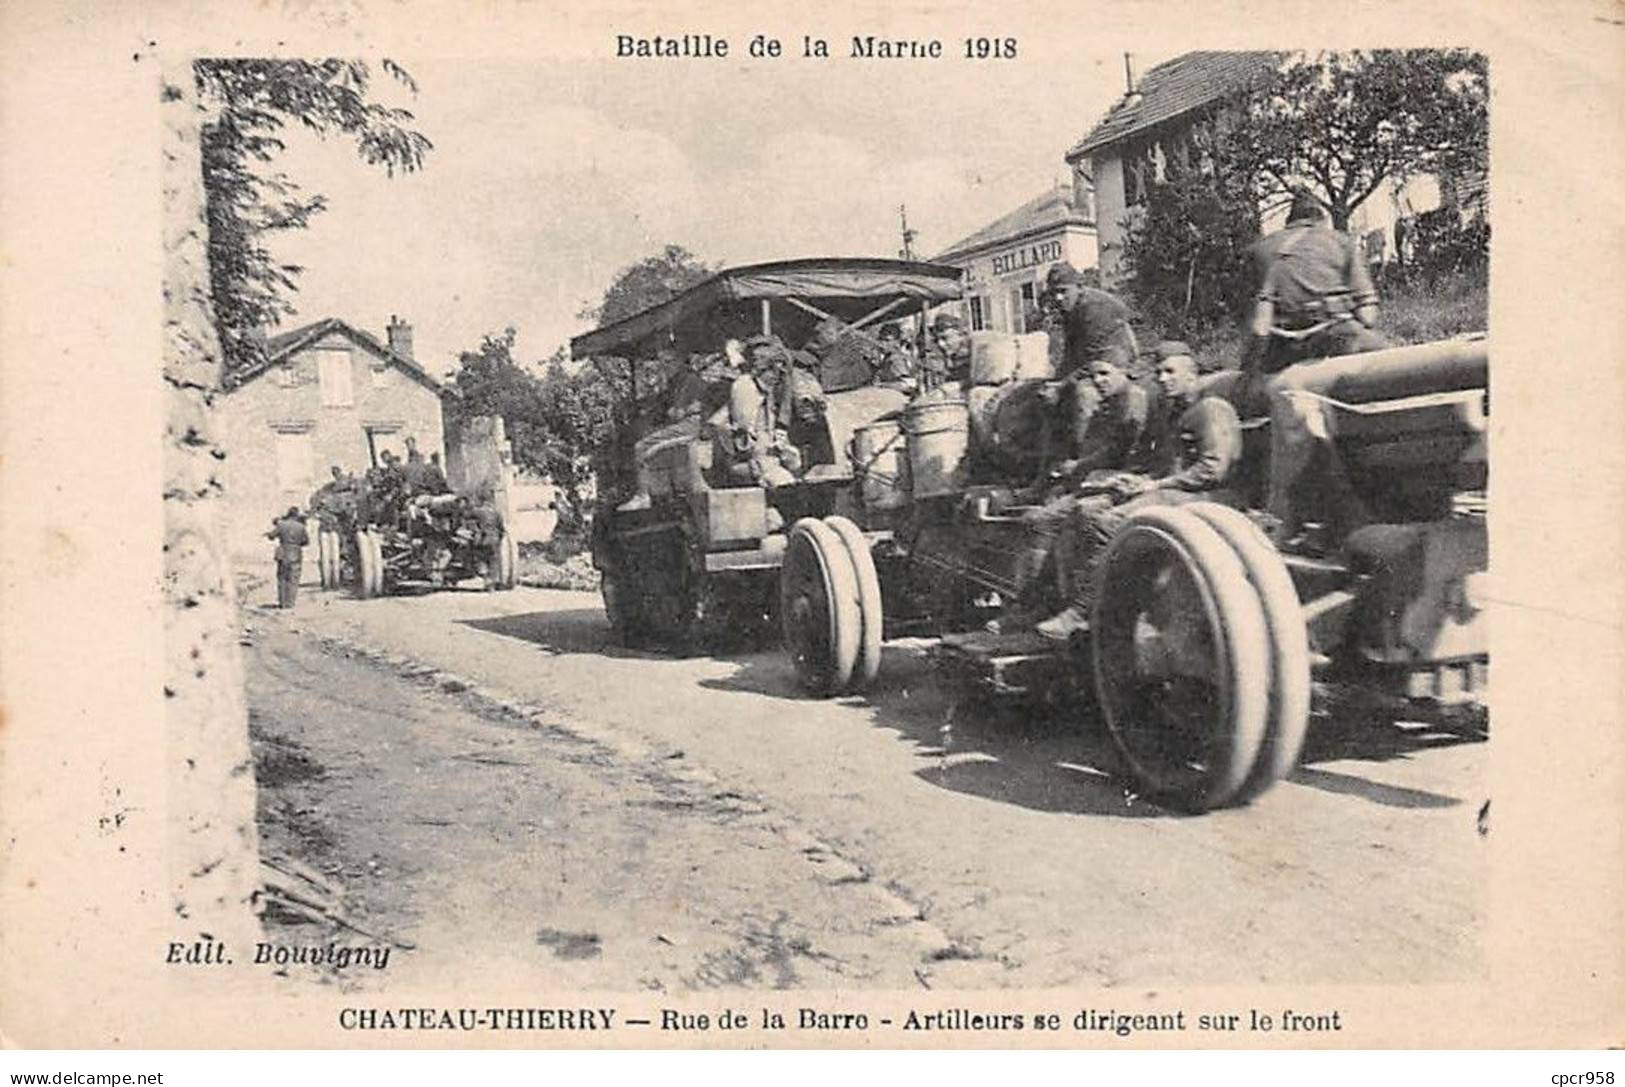 02 - CHATEAU THIERRY - SAN63883 - Rue De La Barre - Artilleurs Se Dirigeant Sur Le Front - Bataille De La Marne 1918 - Chateau Thierry